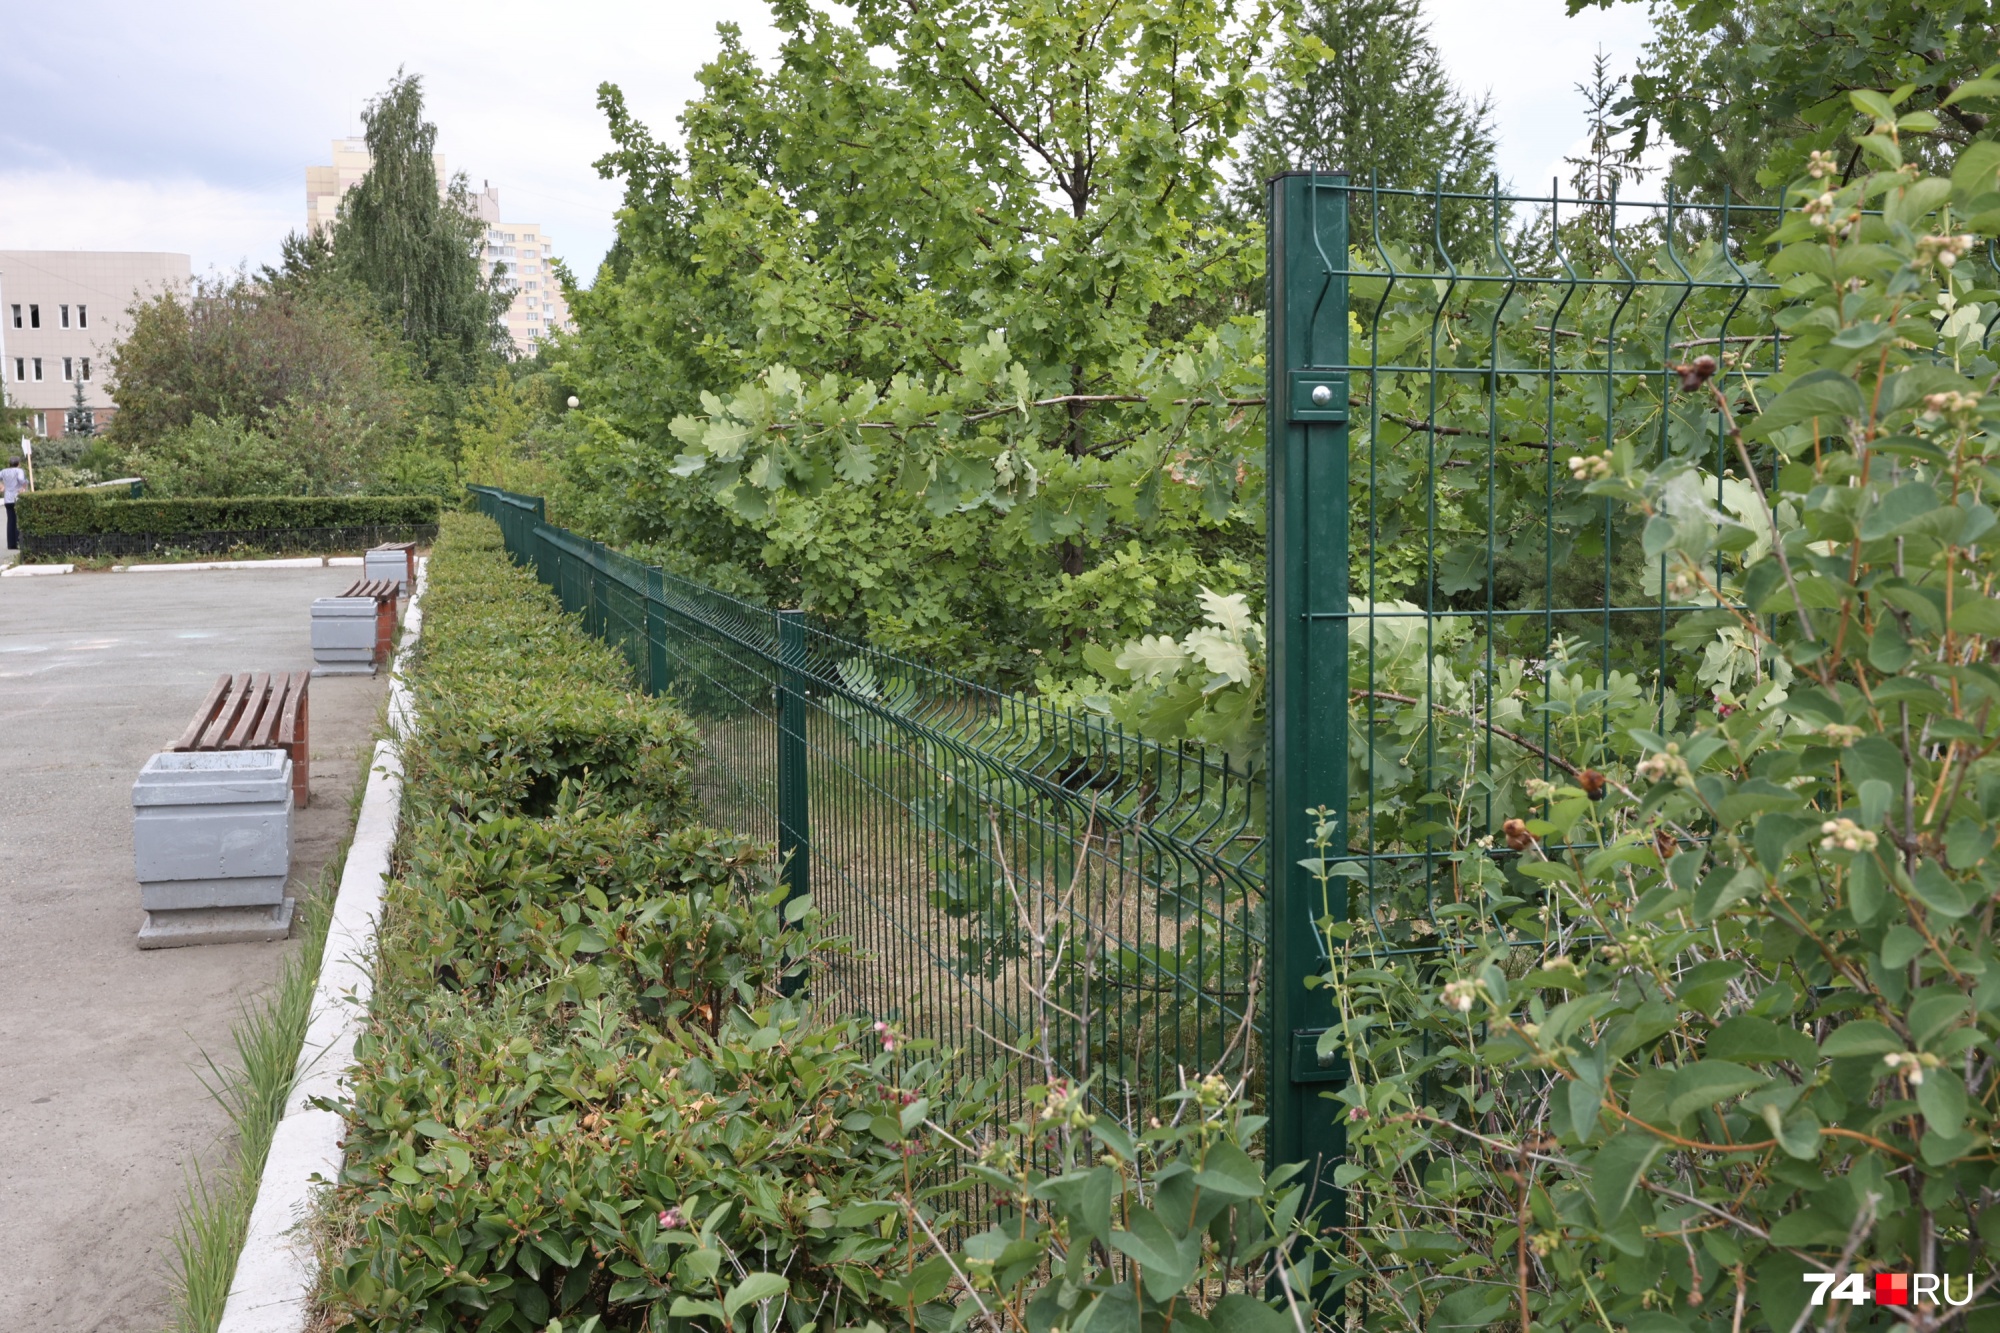 Теперь место отдыха студентов и ботанический сад разделены забором